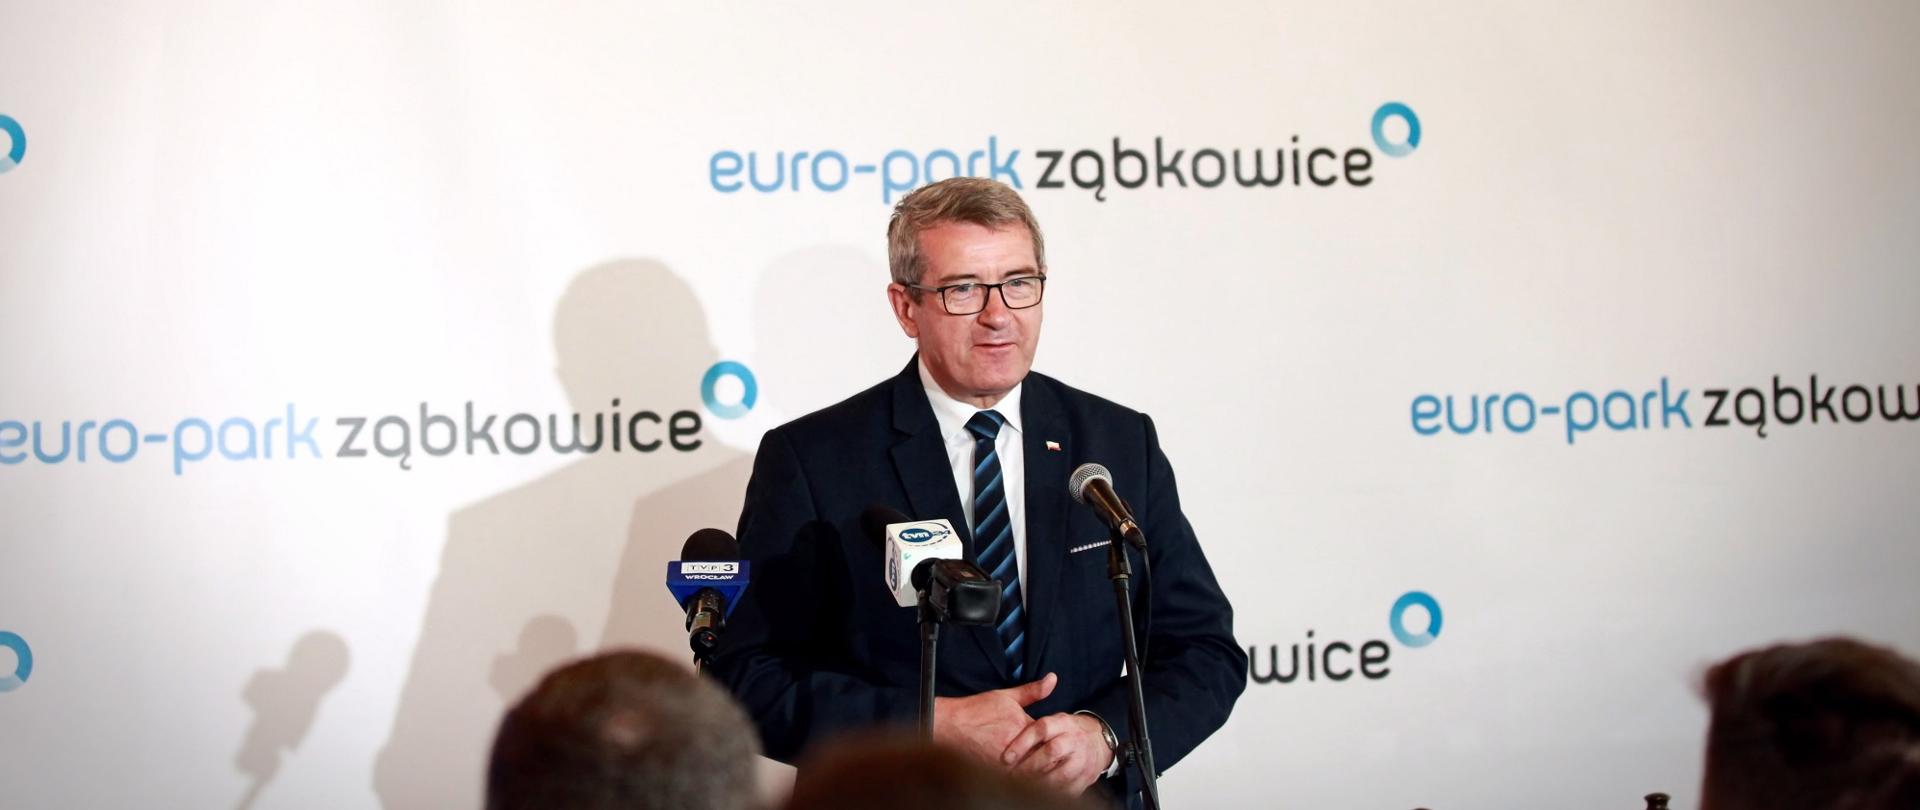 Minister przemawia do mikrofonu na tle białej ściany z napisami Euro-park Ząbkowice.